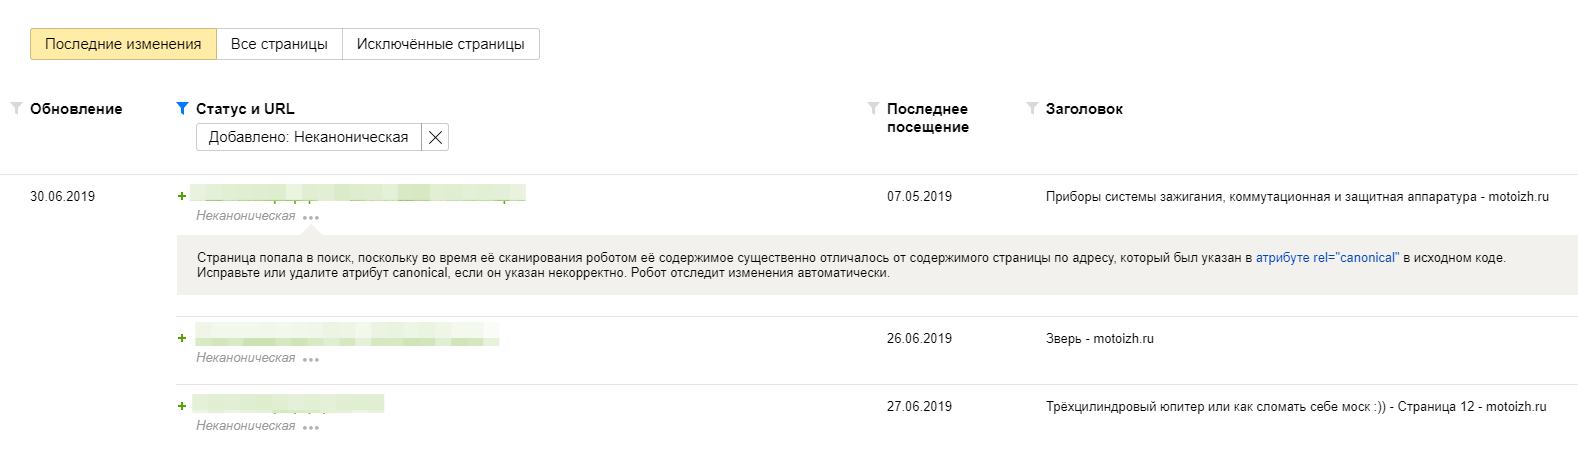 Яндекс начнет чаще отображать в поиске неканонические страницы